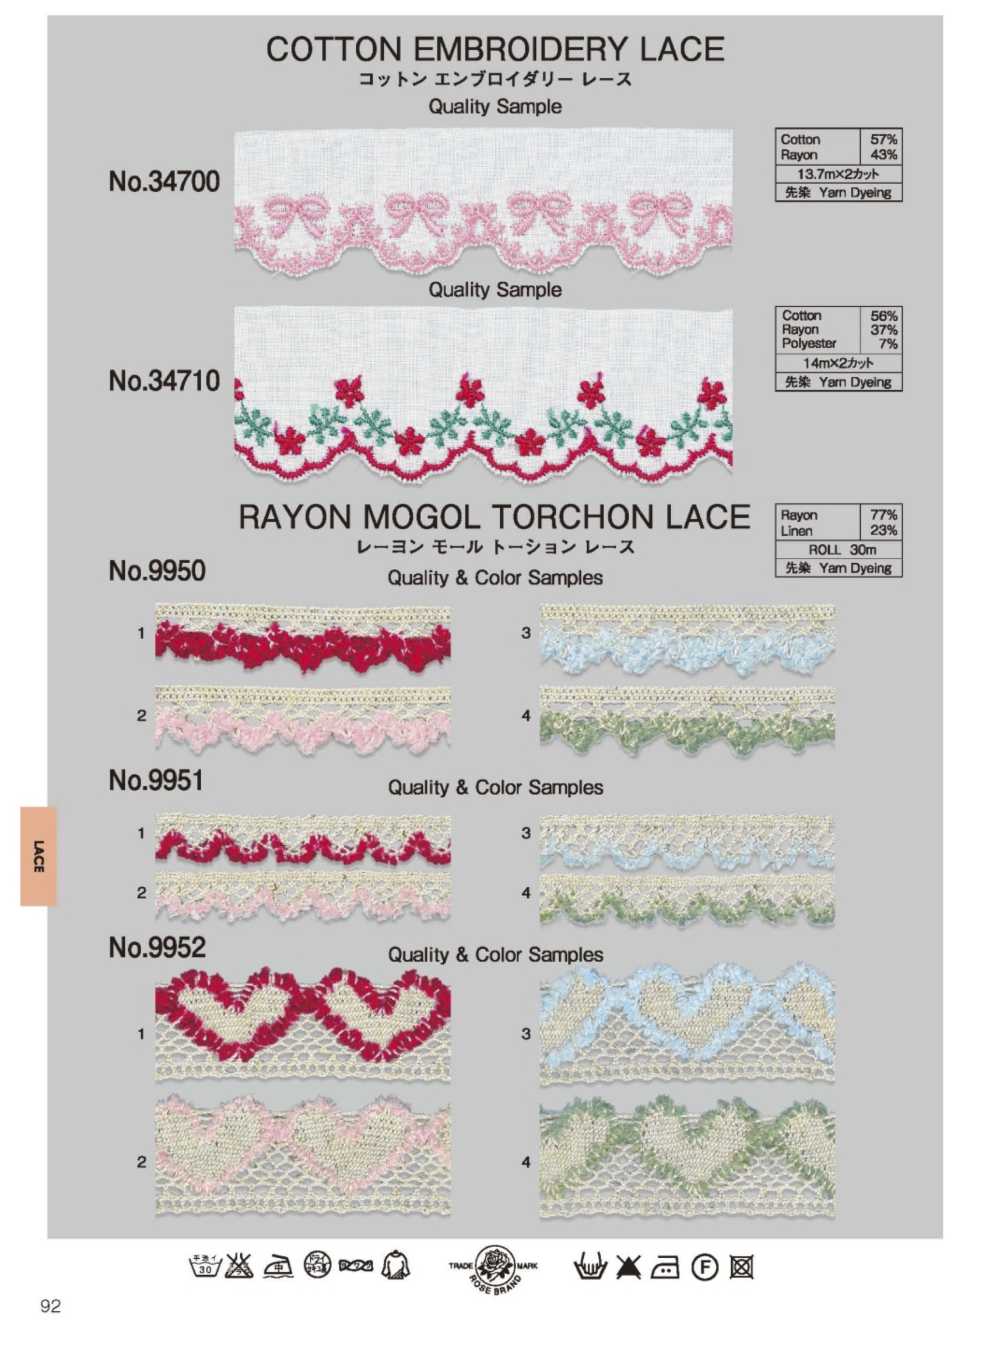 9950 Rayon Mole Torsion Lace ROSE BRAND (Marushin)